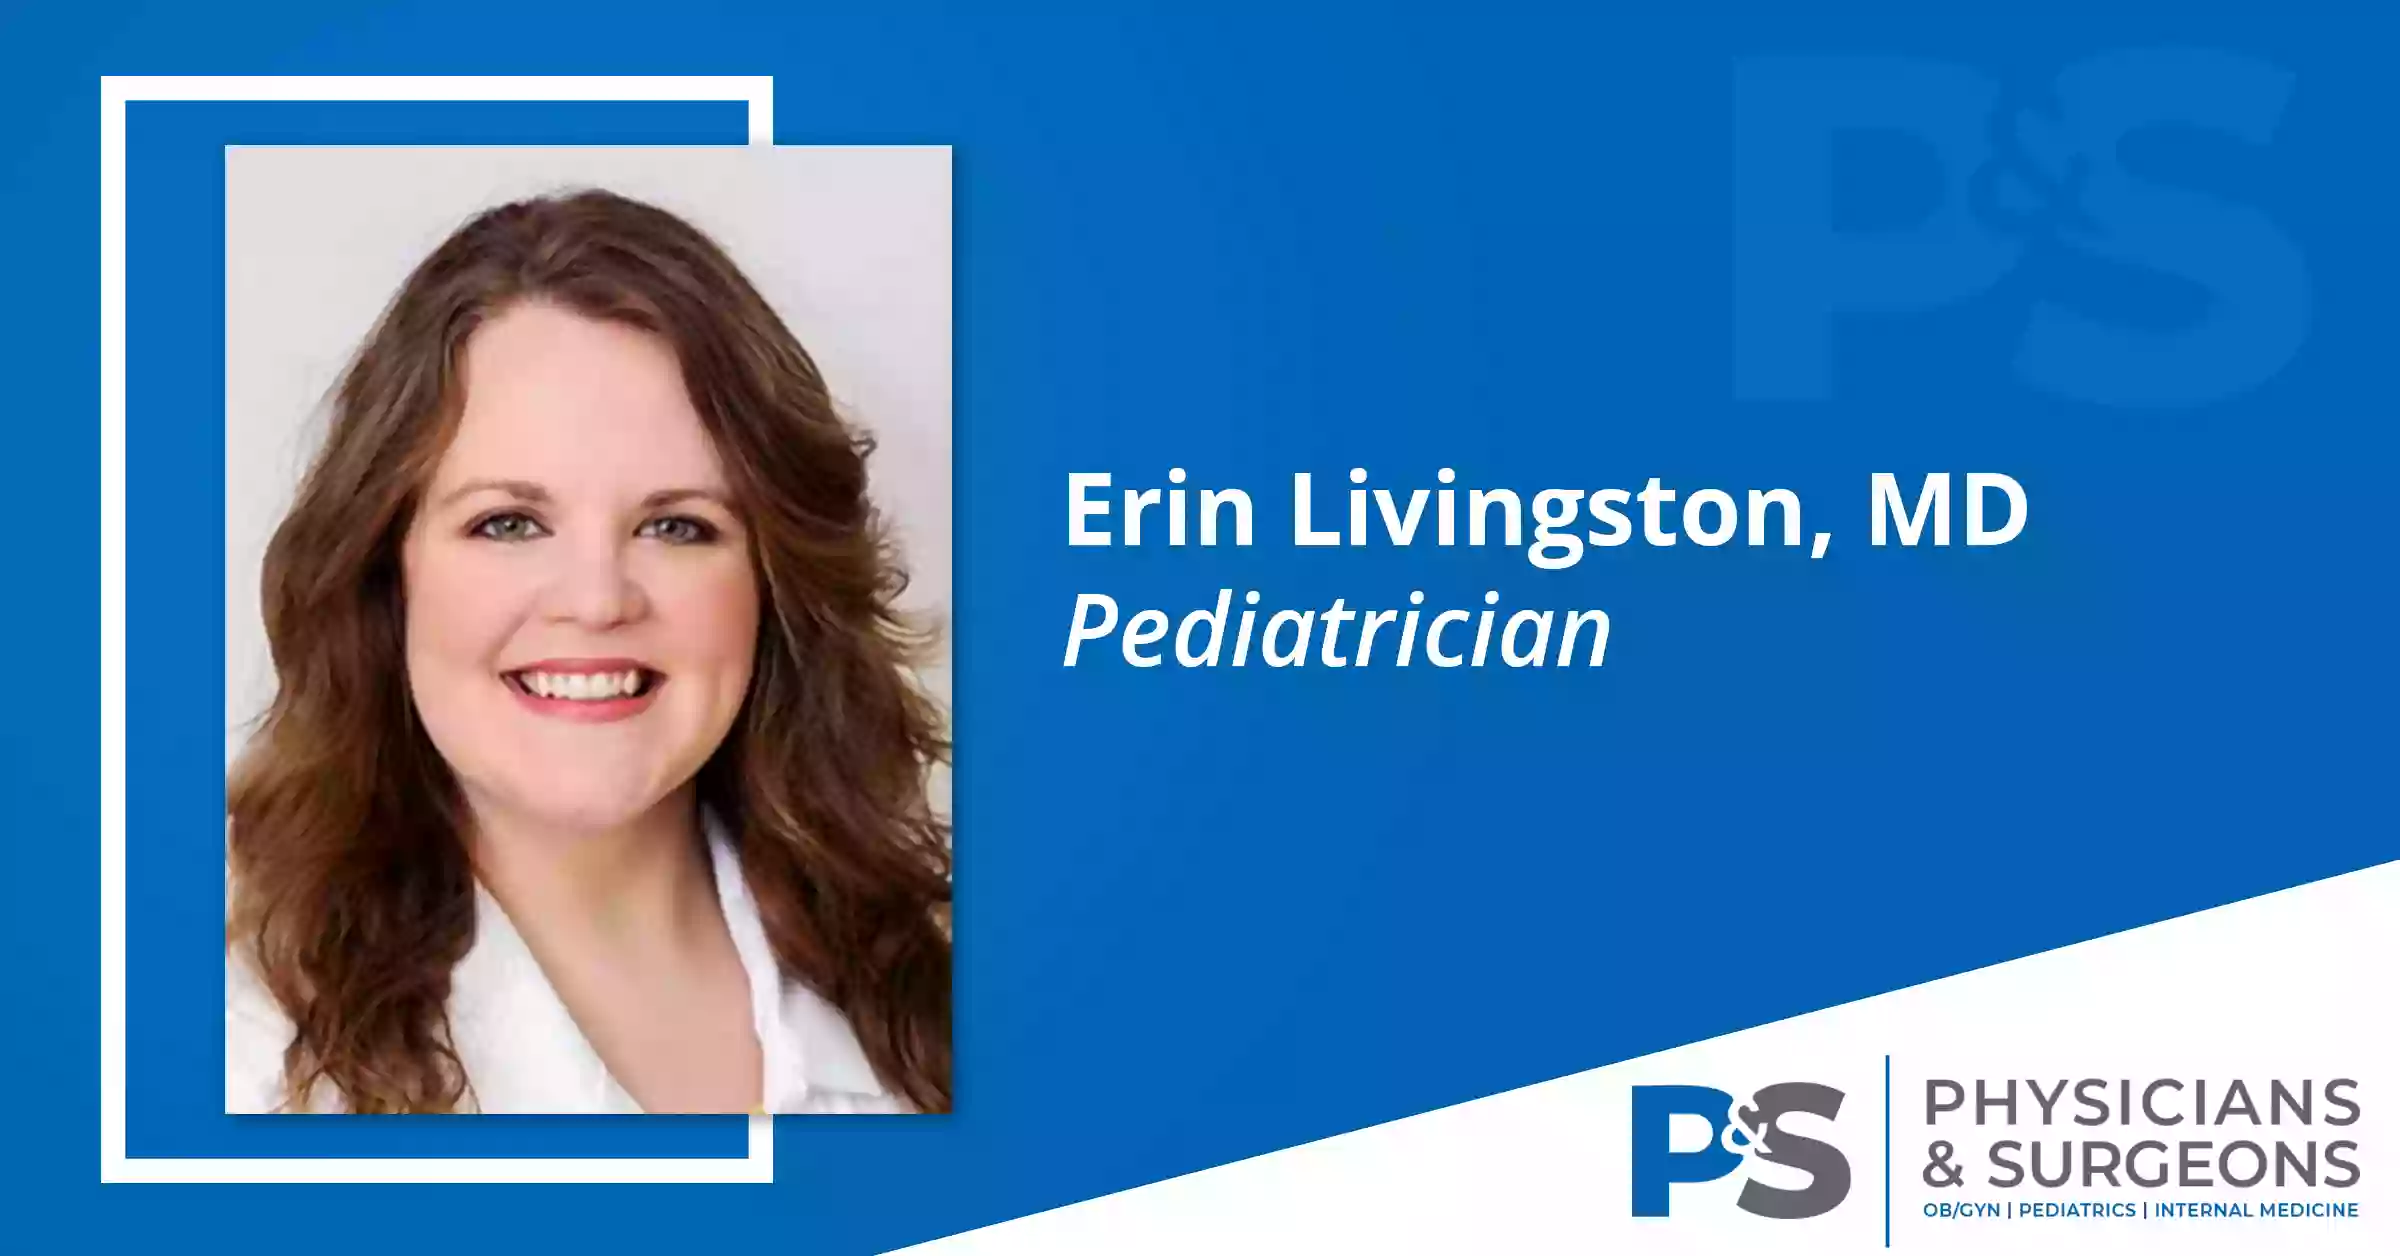 Erin Livingston, MD